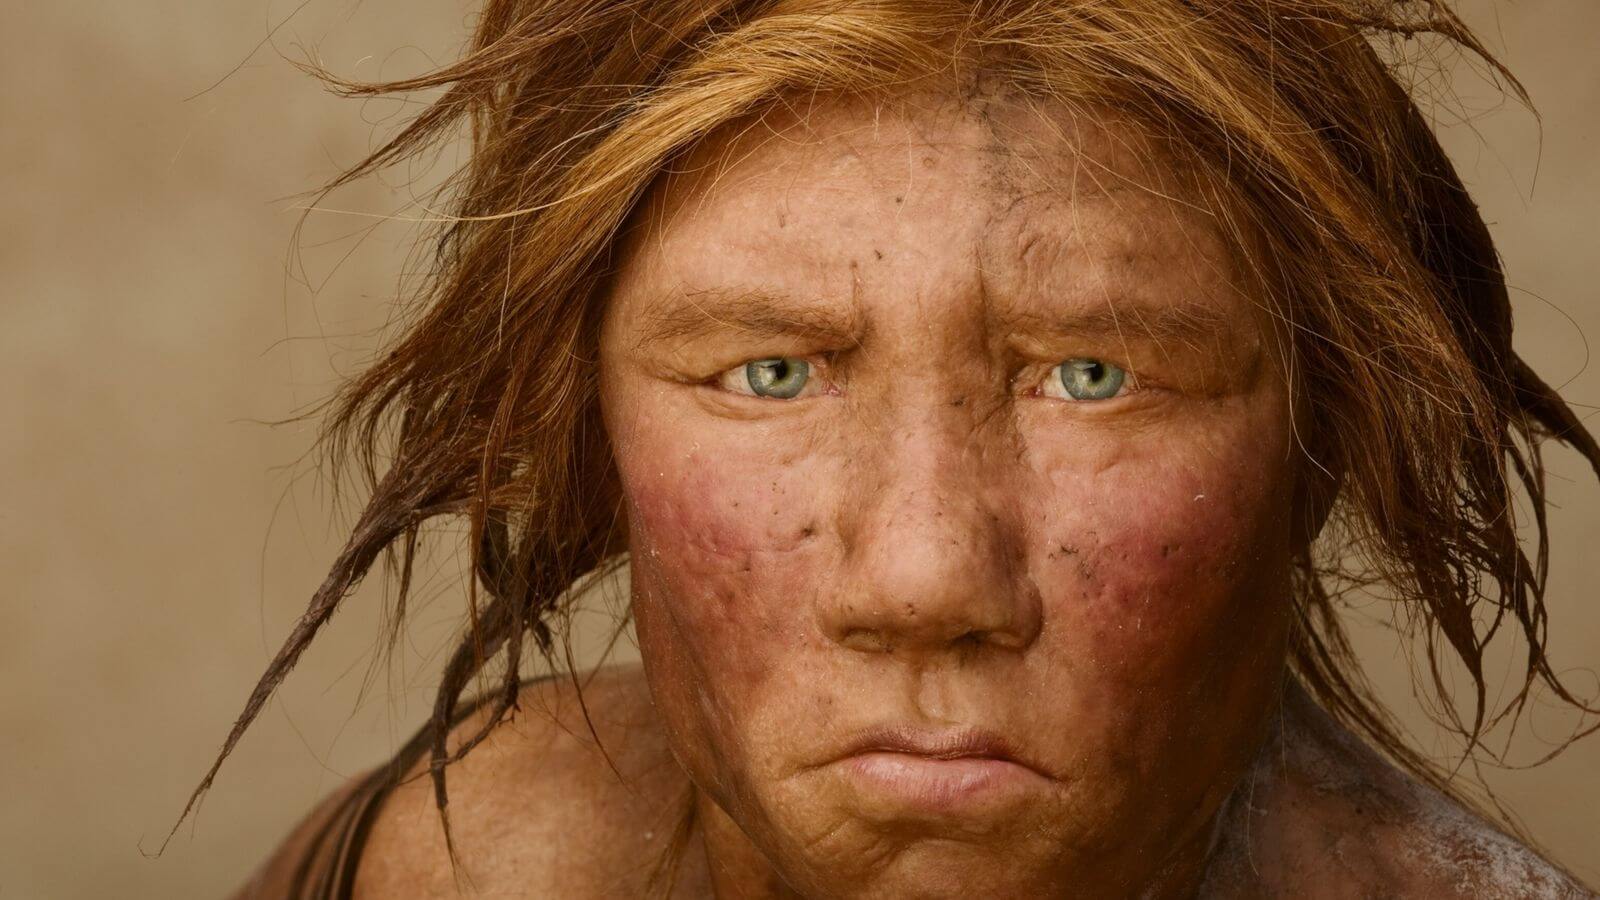 Когда Homo sapiens покинули Африку? Неандерта́лец, человек неандертальский, в советской литературе также носил название палеоантроп — вымерший или, по другой гипотезе, ассимилированный представитель рода людей. Фото.